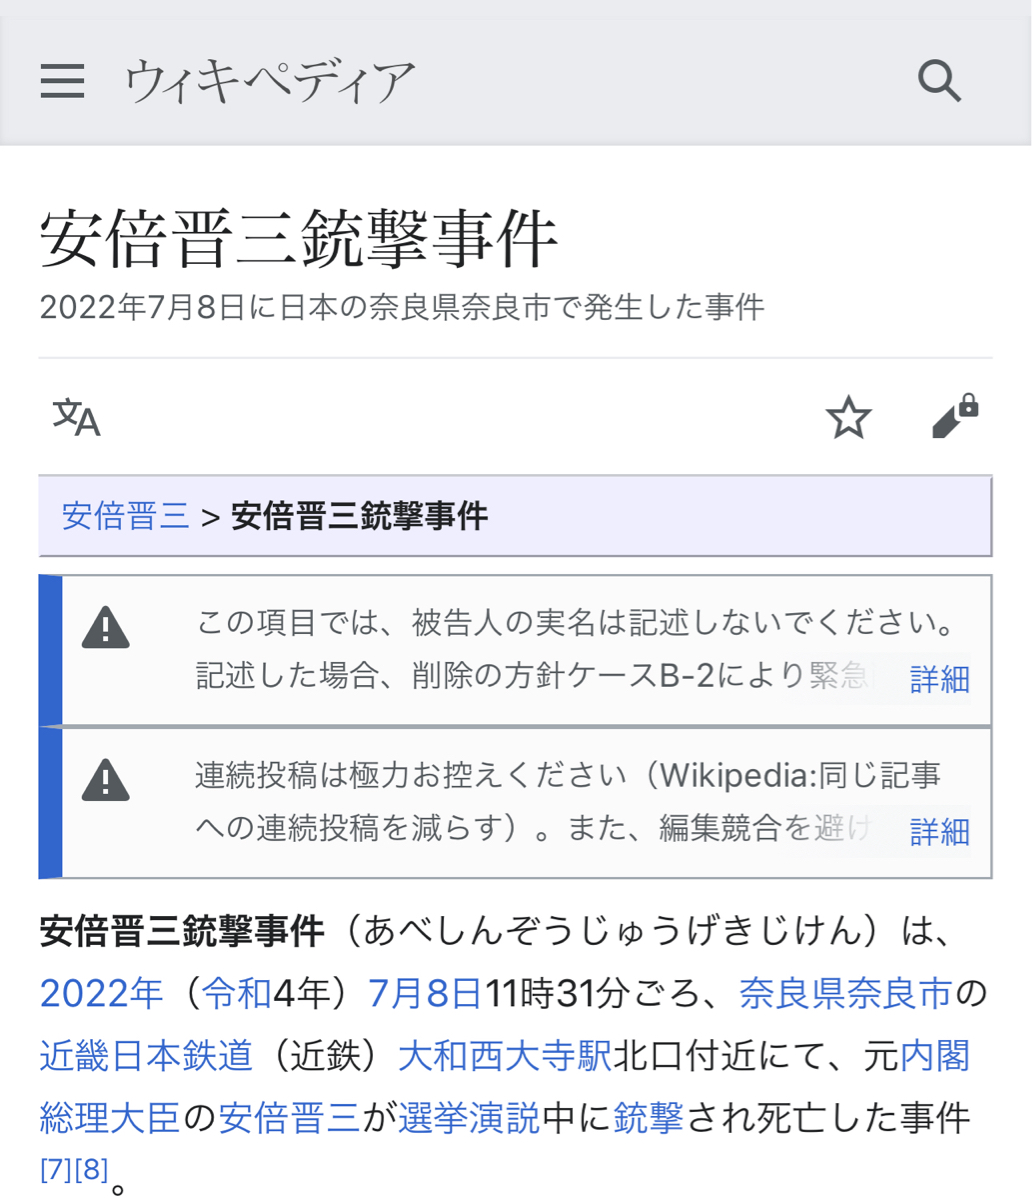 【悲報】日本語版Wikipedia「山上徹也」のページ作成を規制している模様  [237216734]\n_1